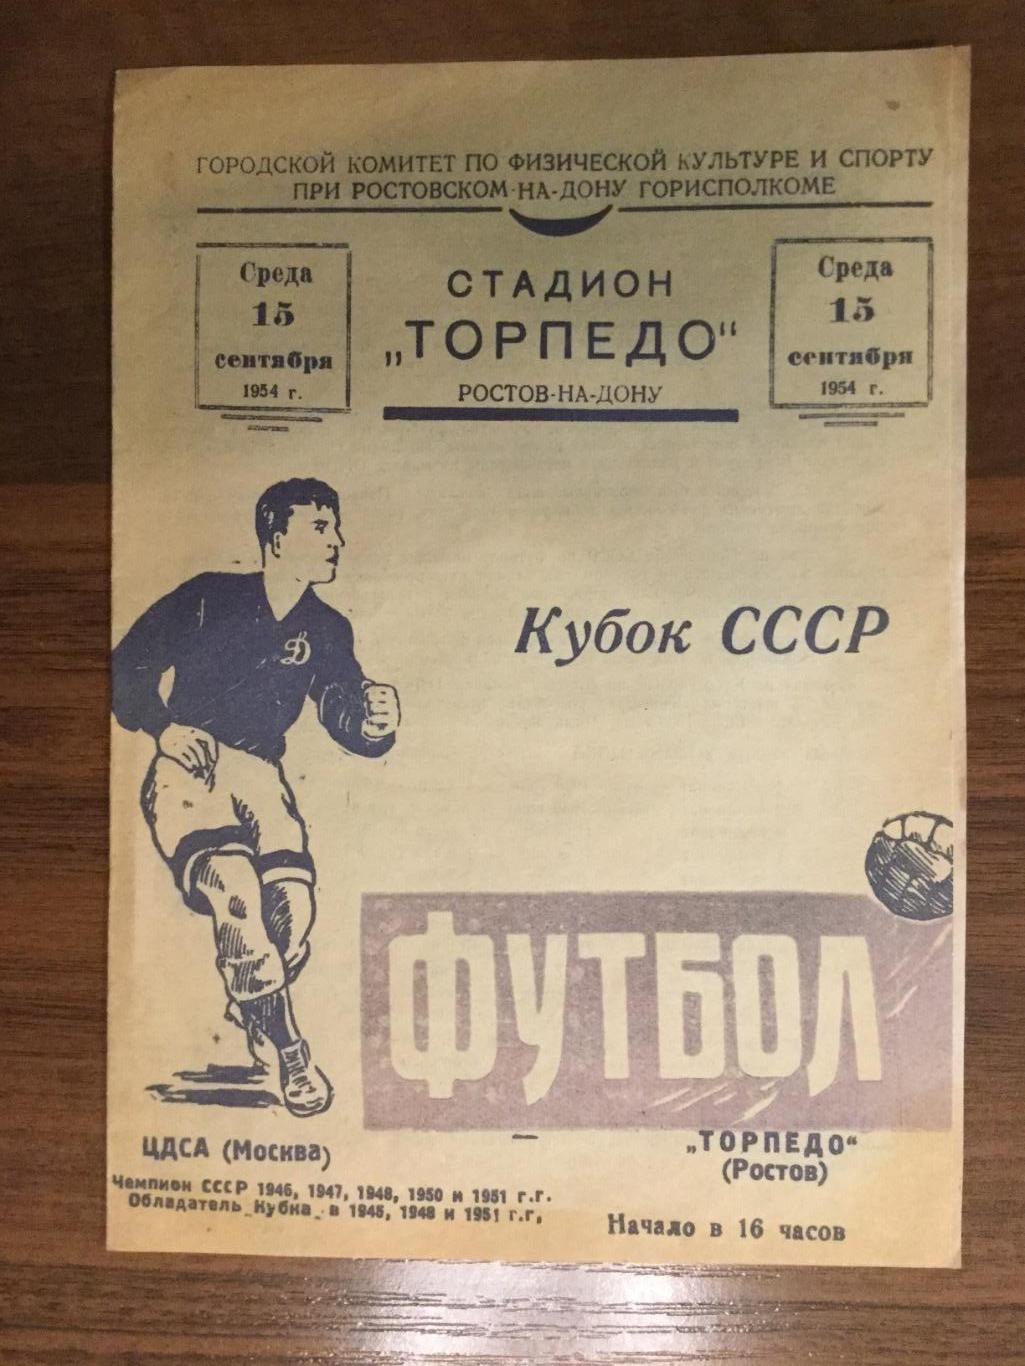 Торпедо (Ростов) - ЦДСА (ЦСКА) - 1954 - Кубок СССР